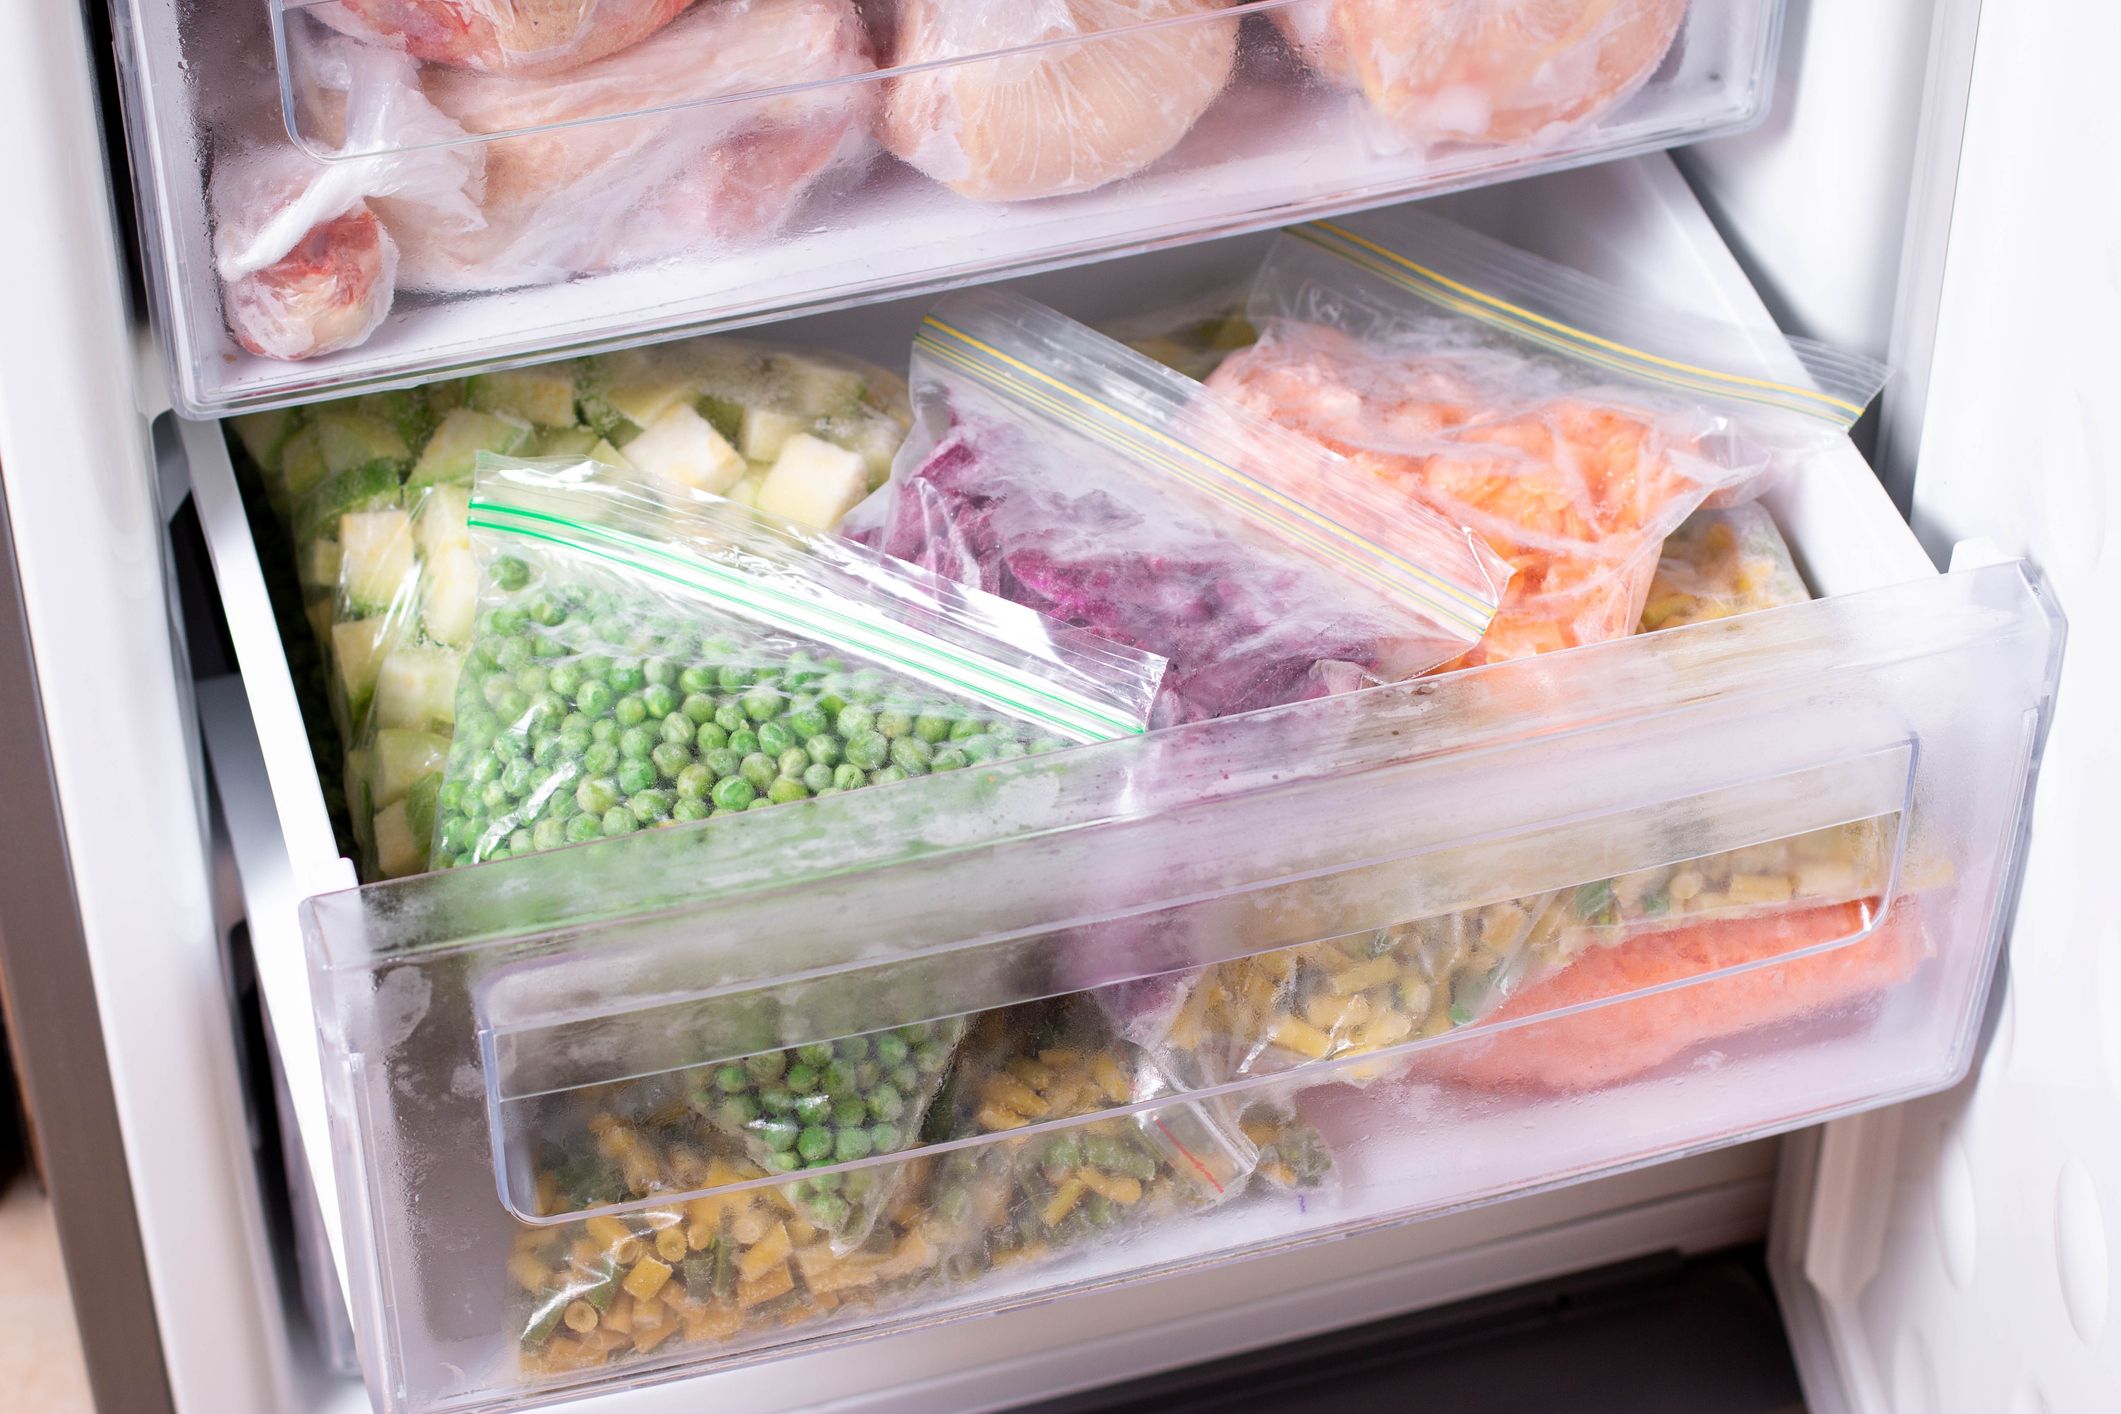 8 consejos para congelar correctamente los alimentos